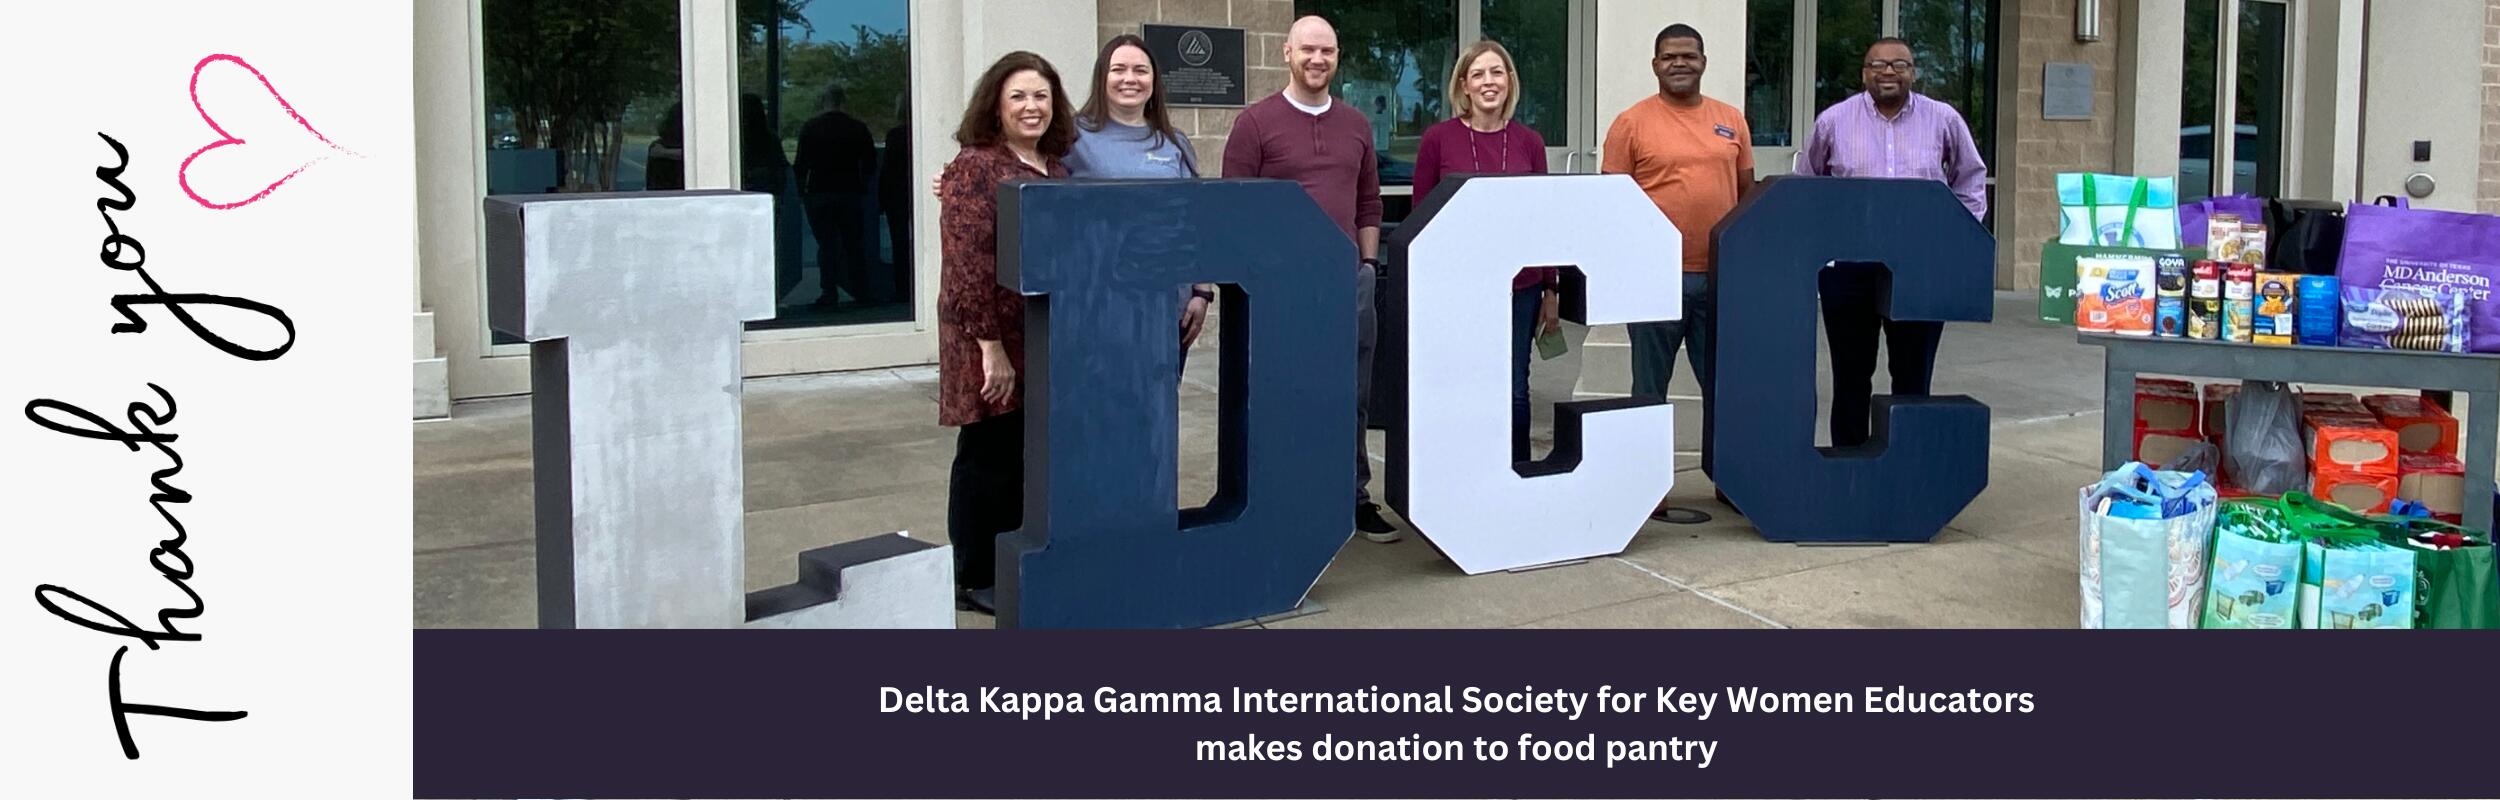 Delta Kappa Gamma Donates Food to Food Pantry